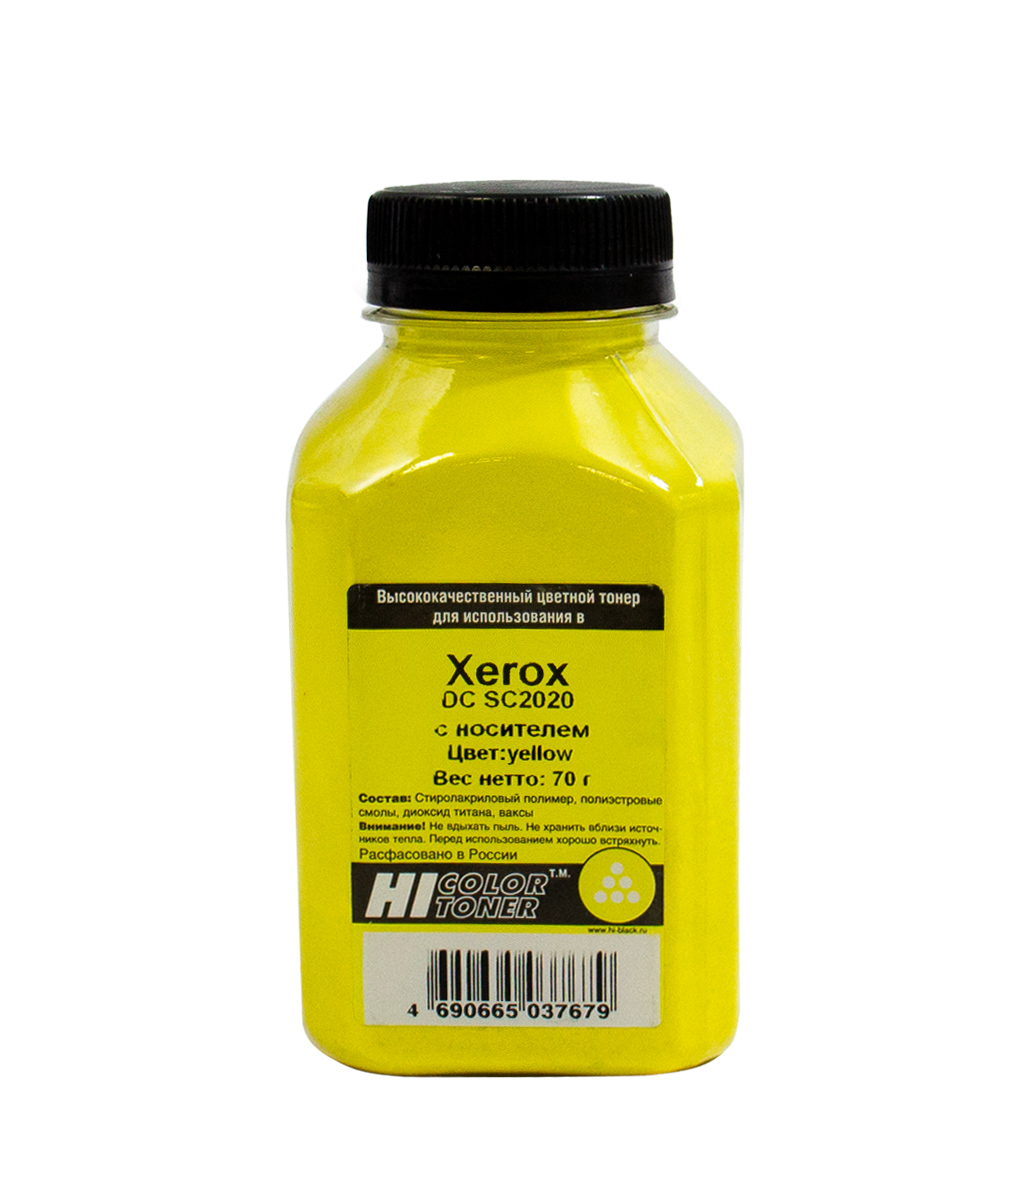 Тонер Hi-Color, бутыль 70 г, желтый, совместимый для Xerox DC SC2020, с носителем (20111337)